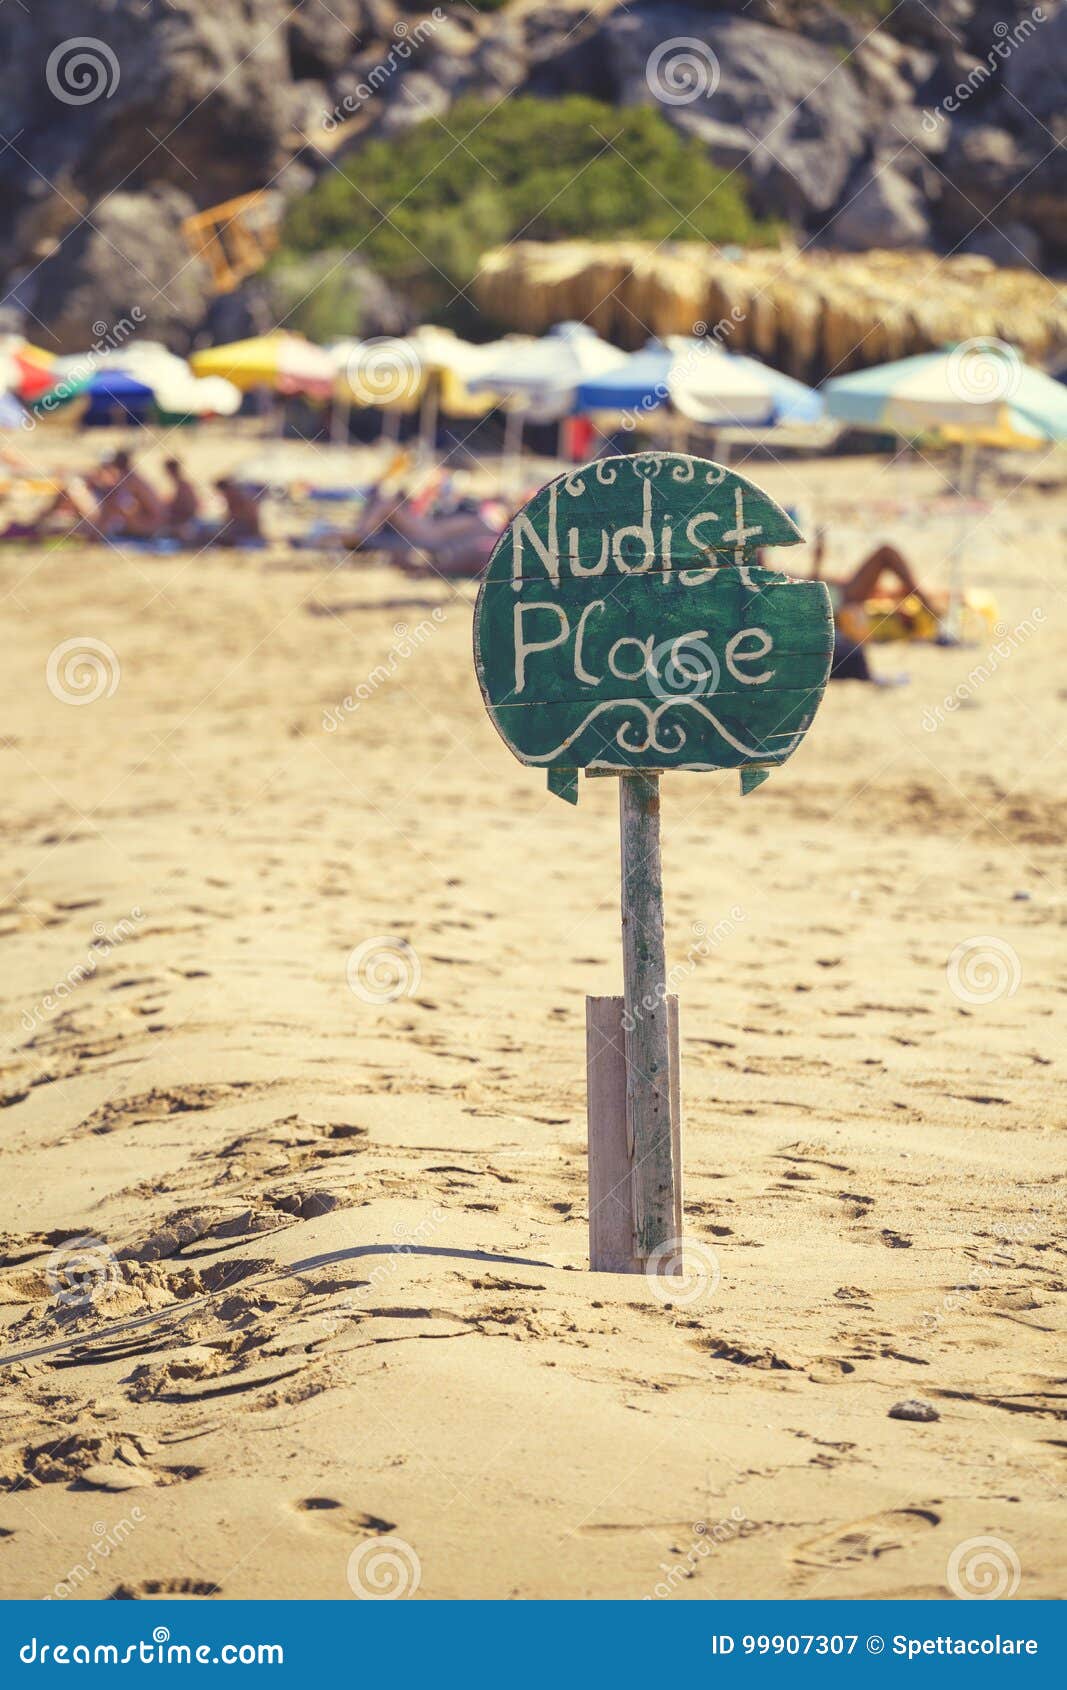 voyeur on the nude beach